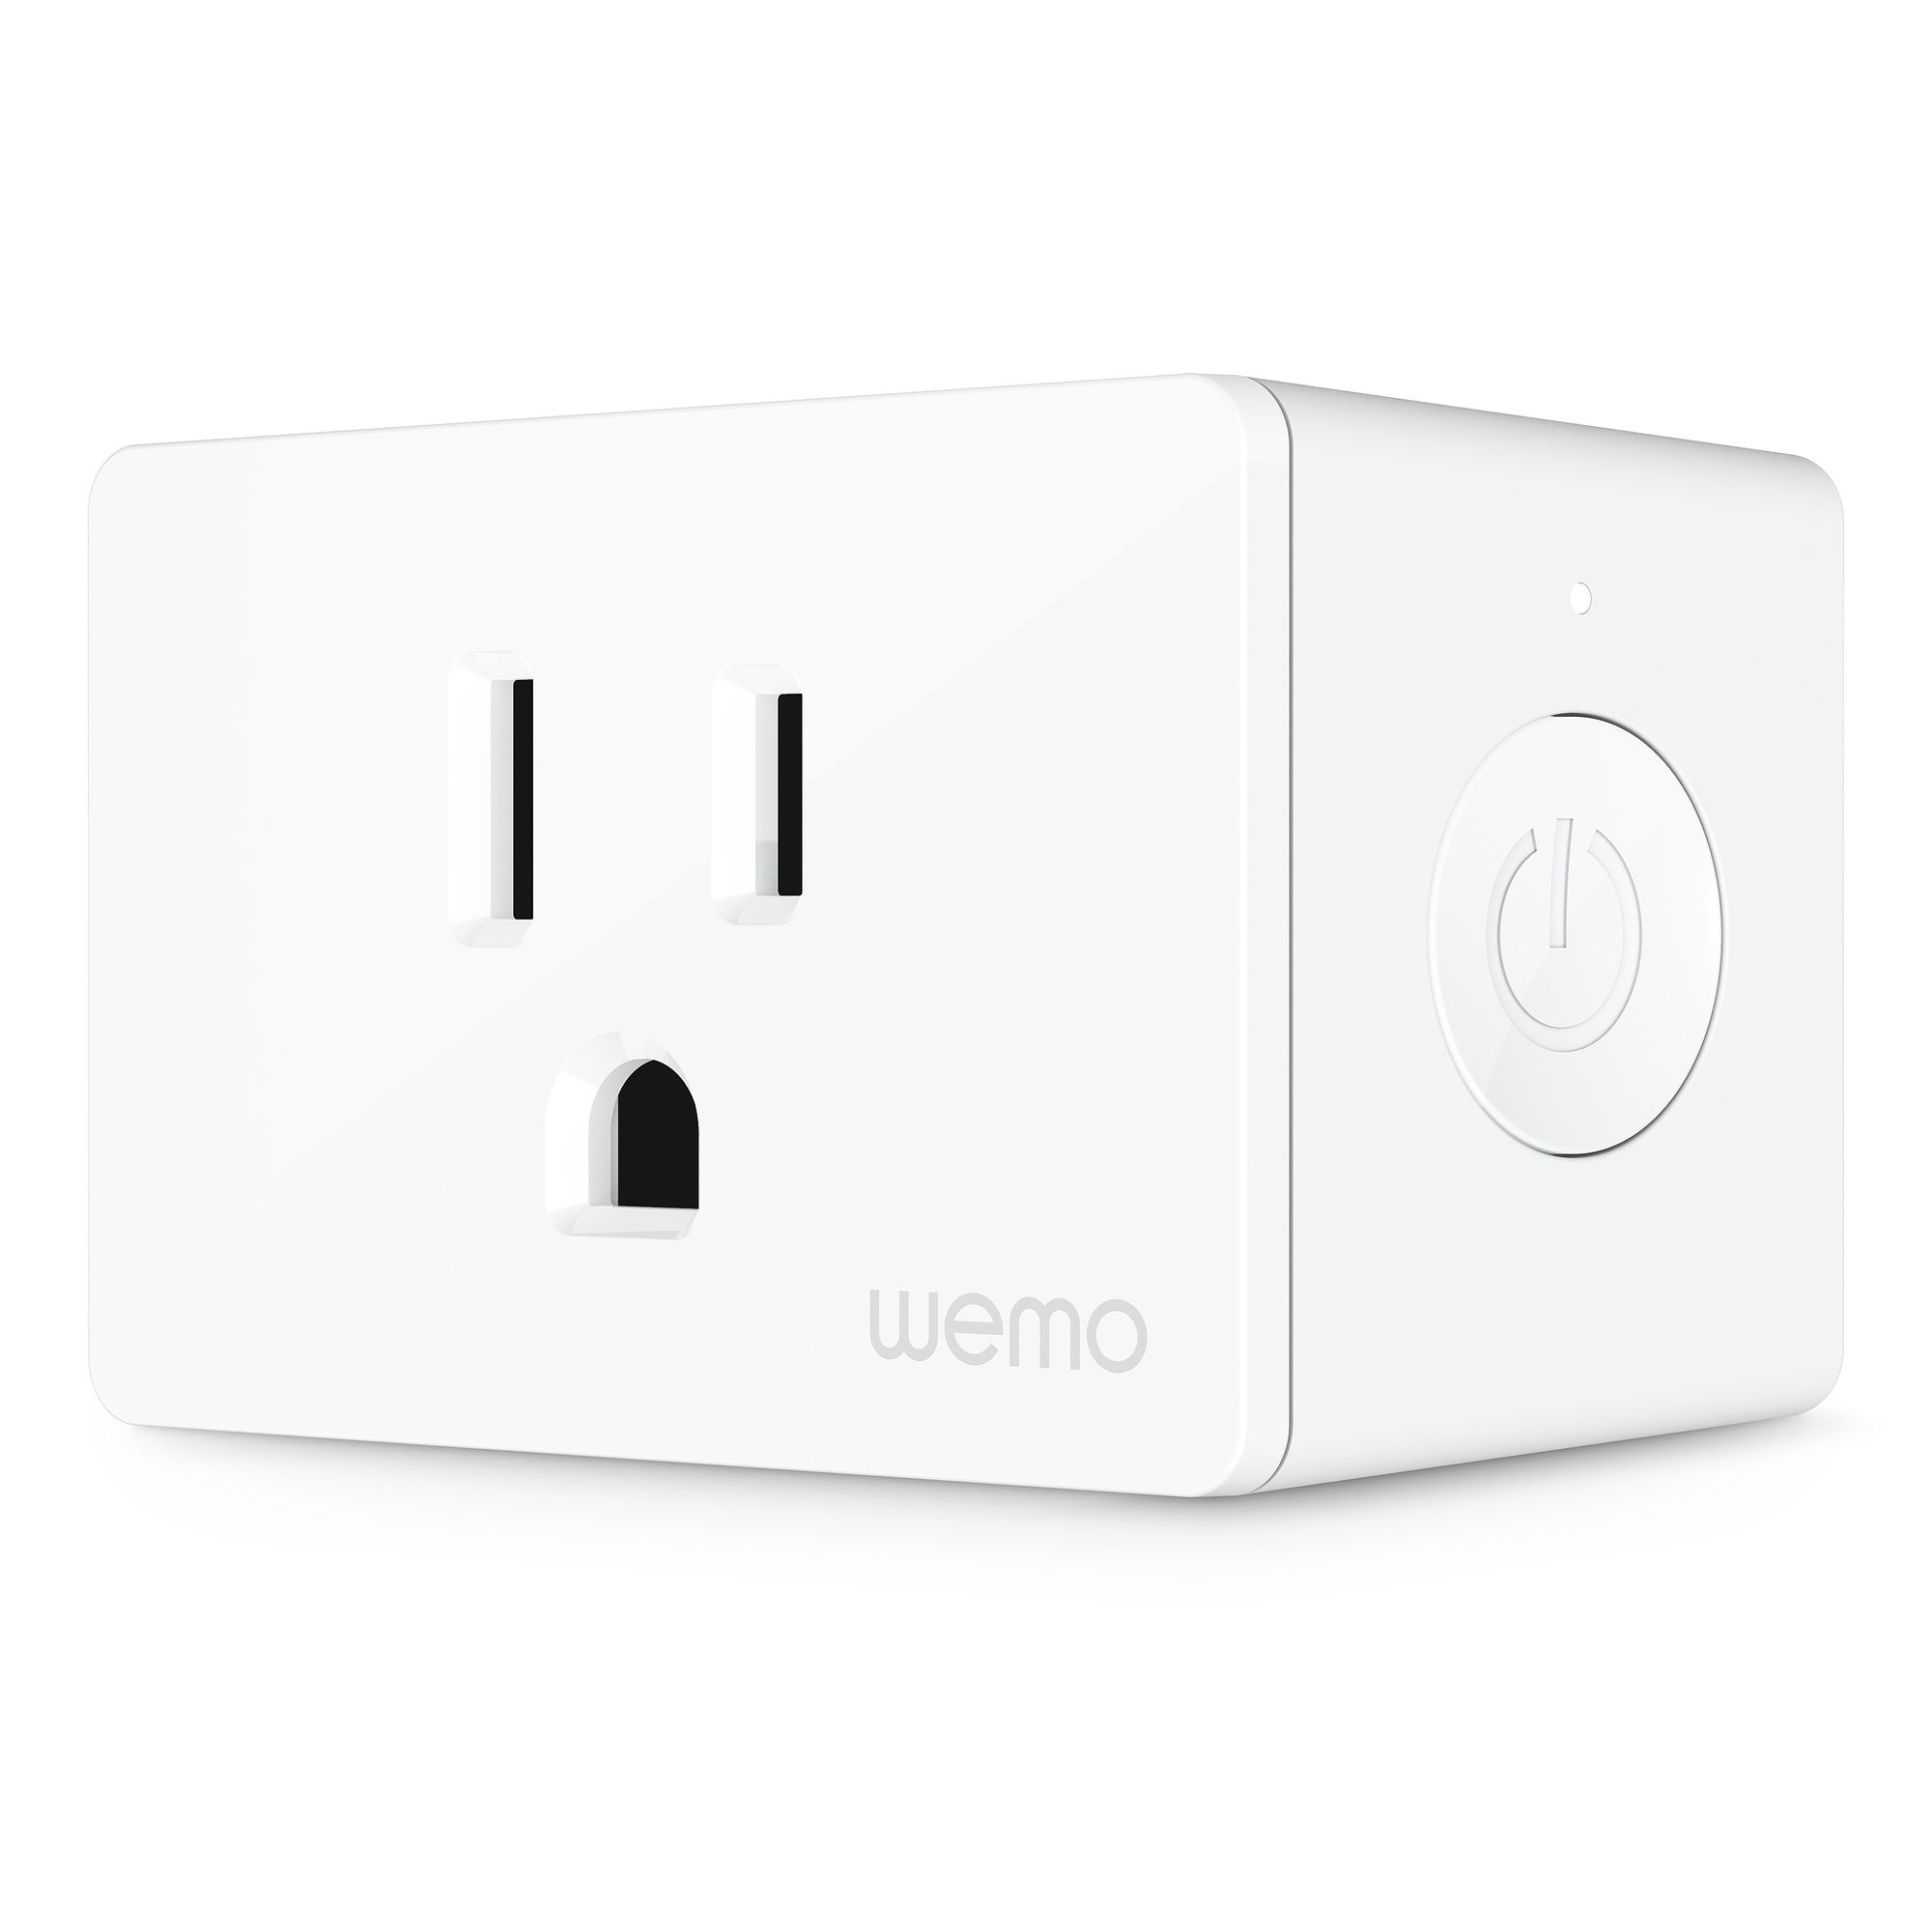 Wemo mini smart plug 3